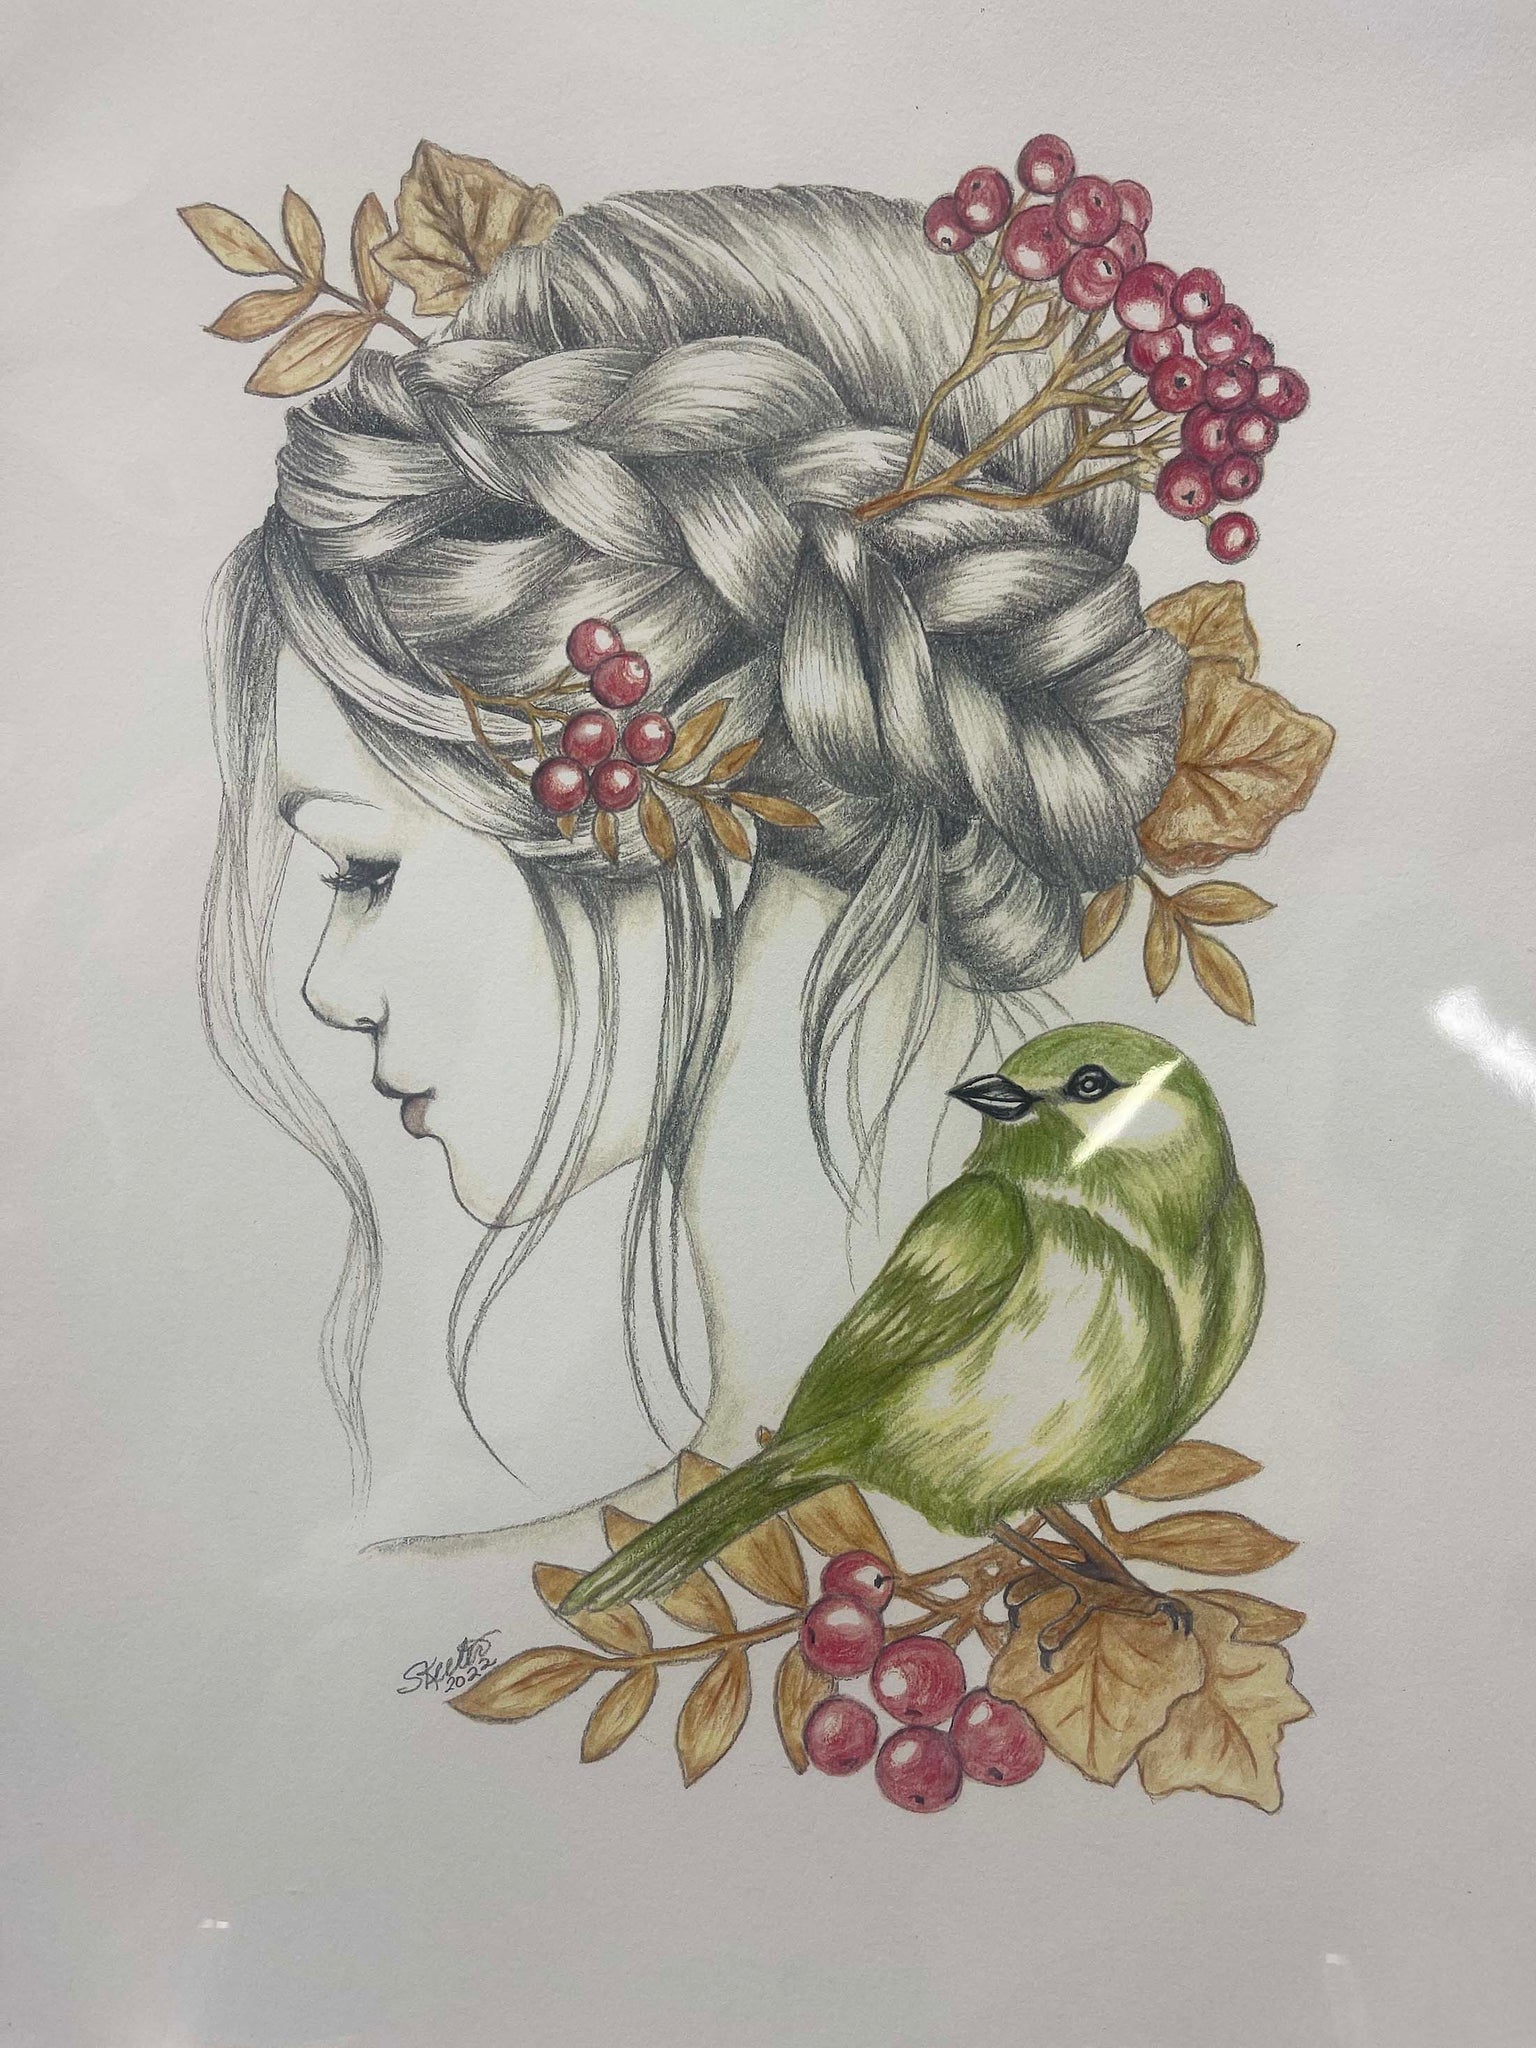 watercolor, women with berries in hair, bird on shoulder